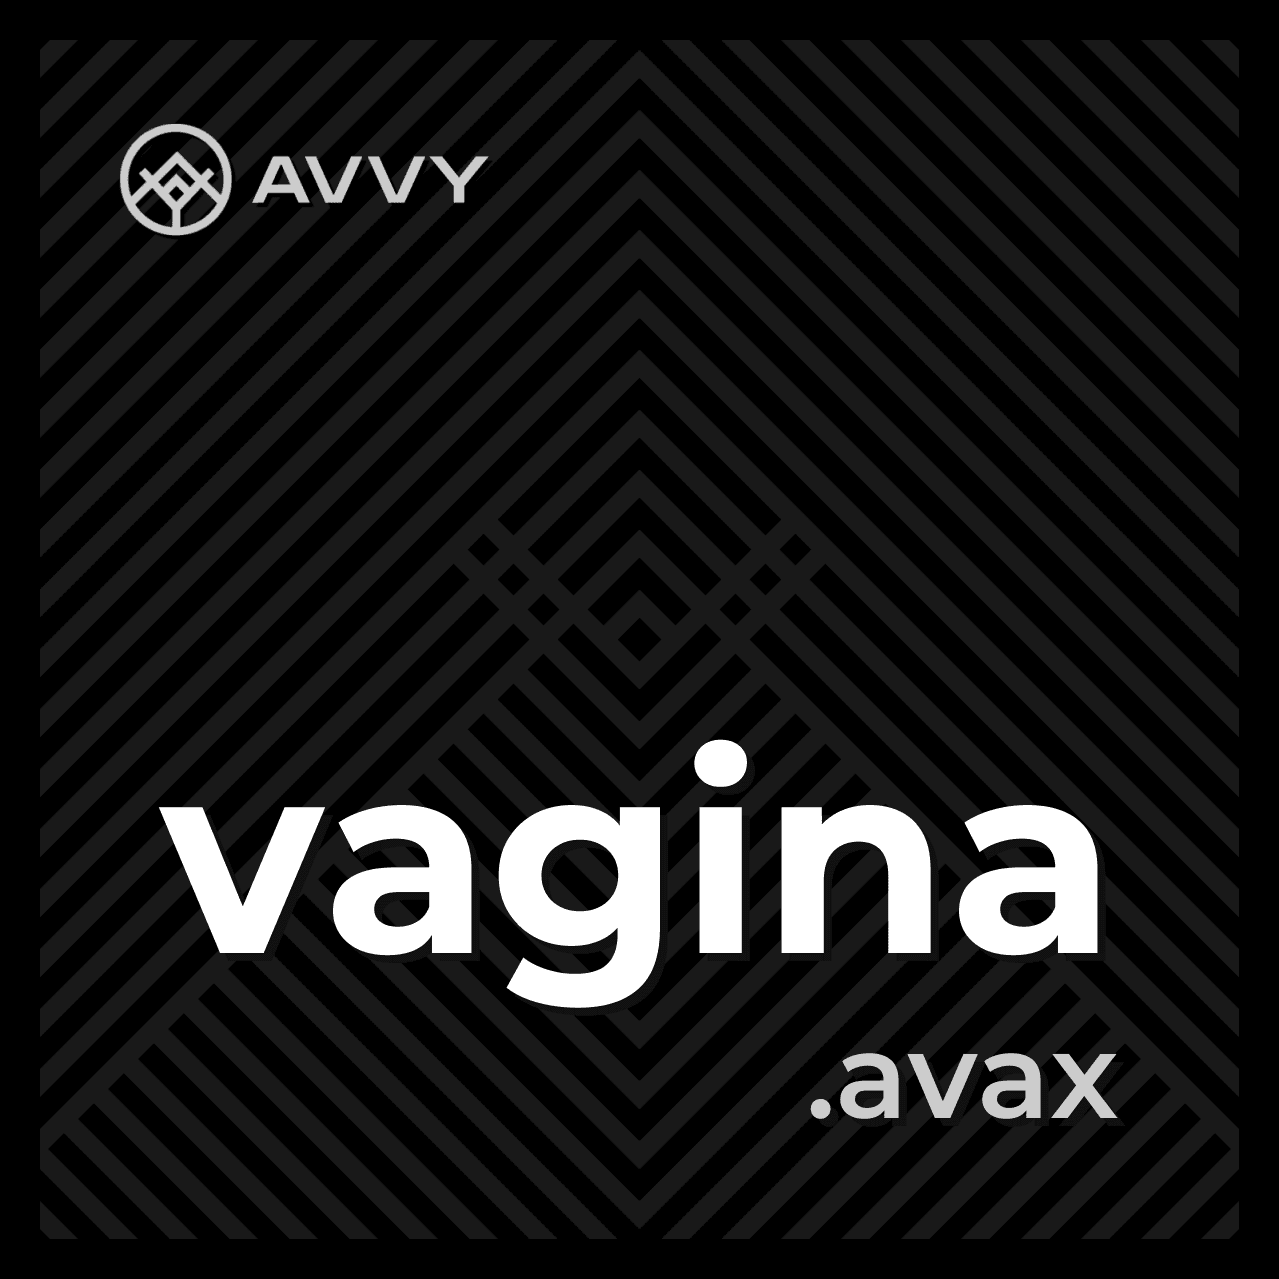 vagina.avax